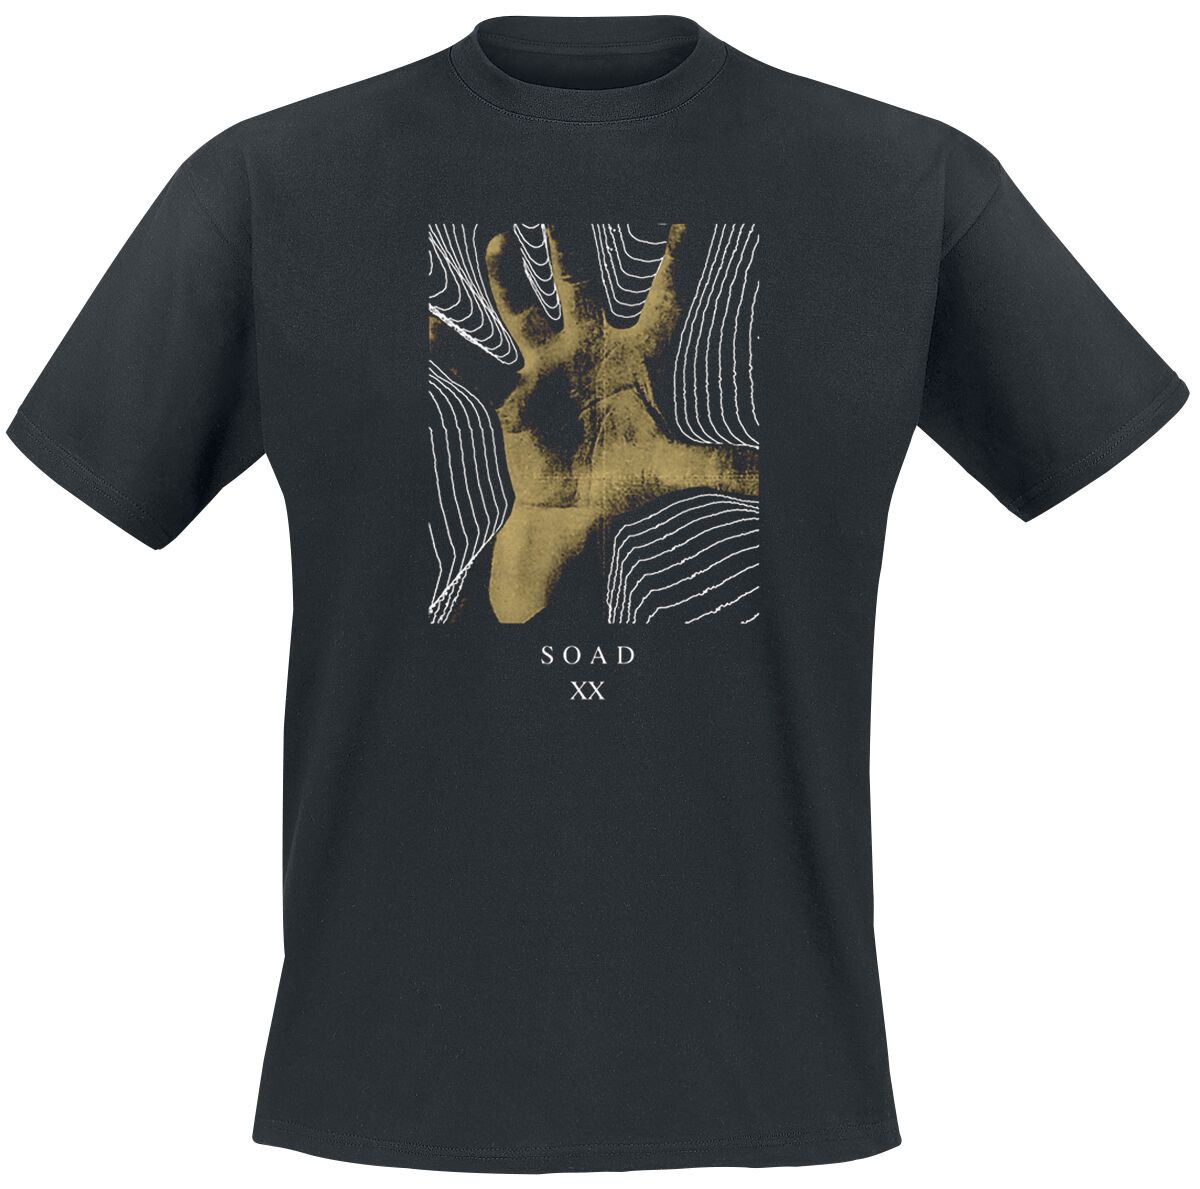 System Of A Down T-Shirt - 20 Years Hand - S bis XXL - für Männer - Größe XXL - schwarz  - Lizenziertes Merchandise!